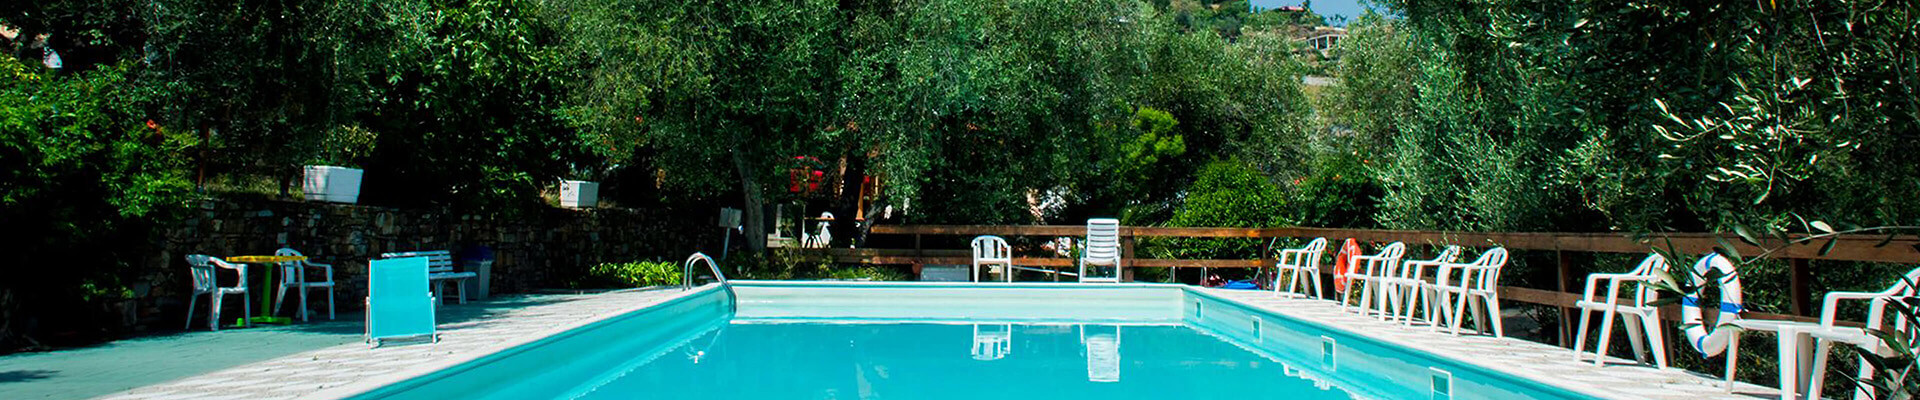 Campingplatz und Swimmingpool Il Persiano in San Lorenzo al Mare